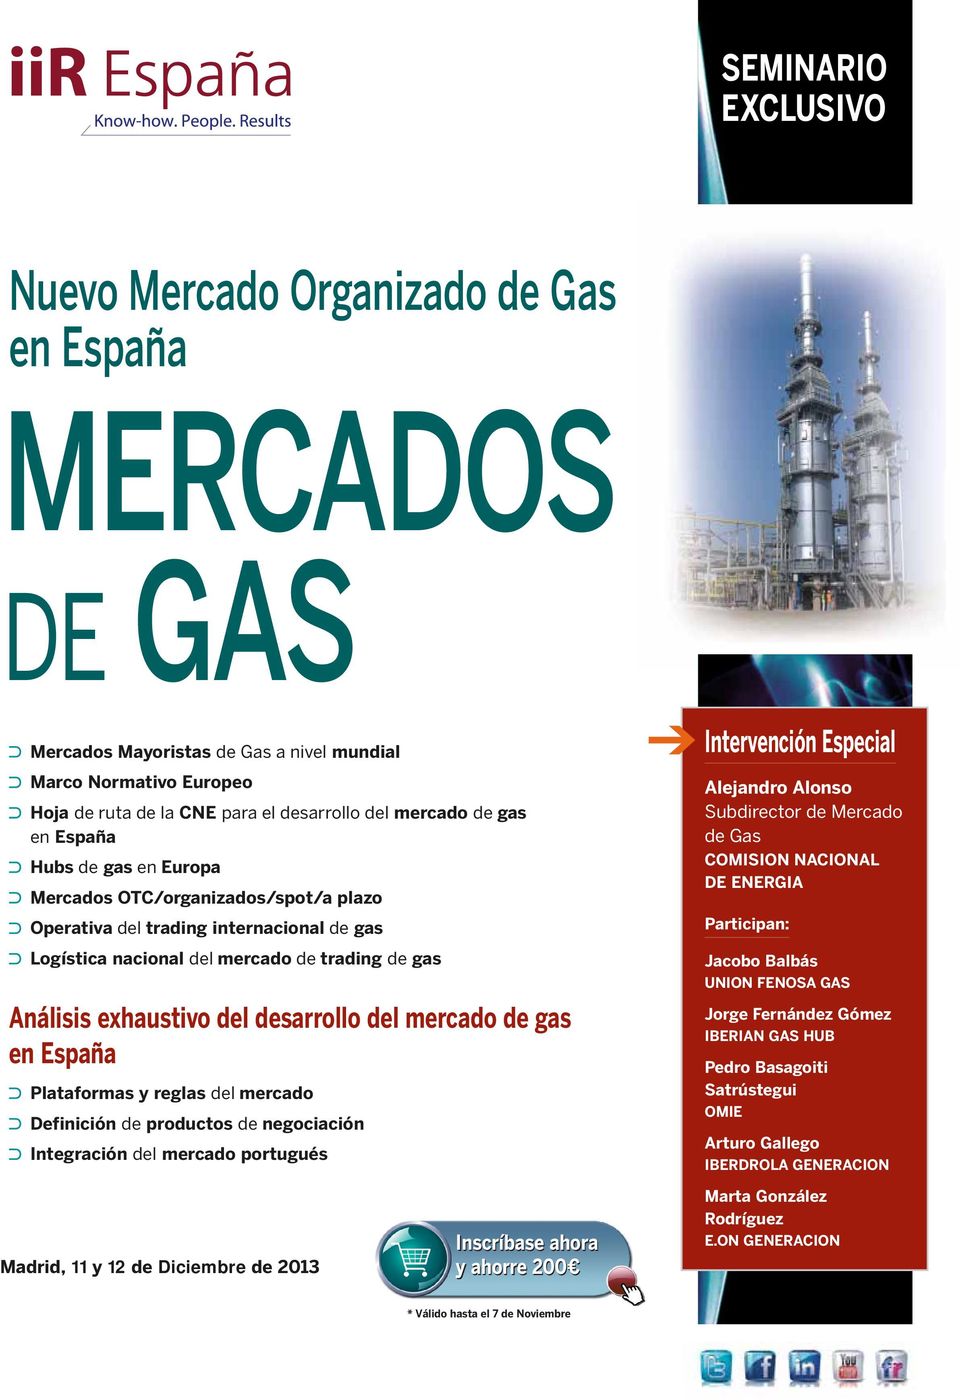 de gas Plataformas y reglas del mercado Definición de productos de negociación Integración del mercado portugués Intervención Especial Alejandro Alonso Subdirector de Mercado de Gas COMISION NACIONAL